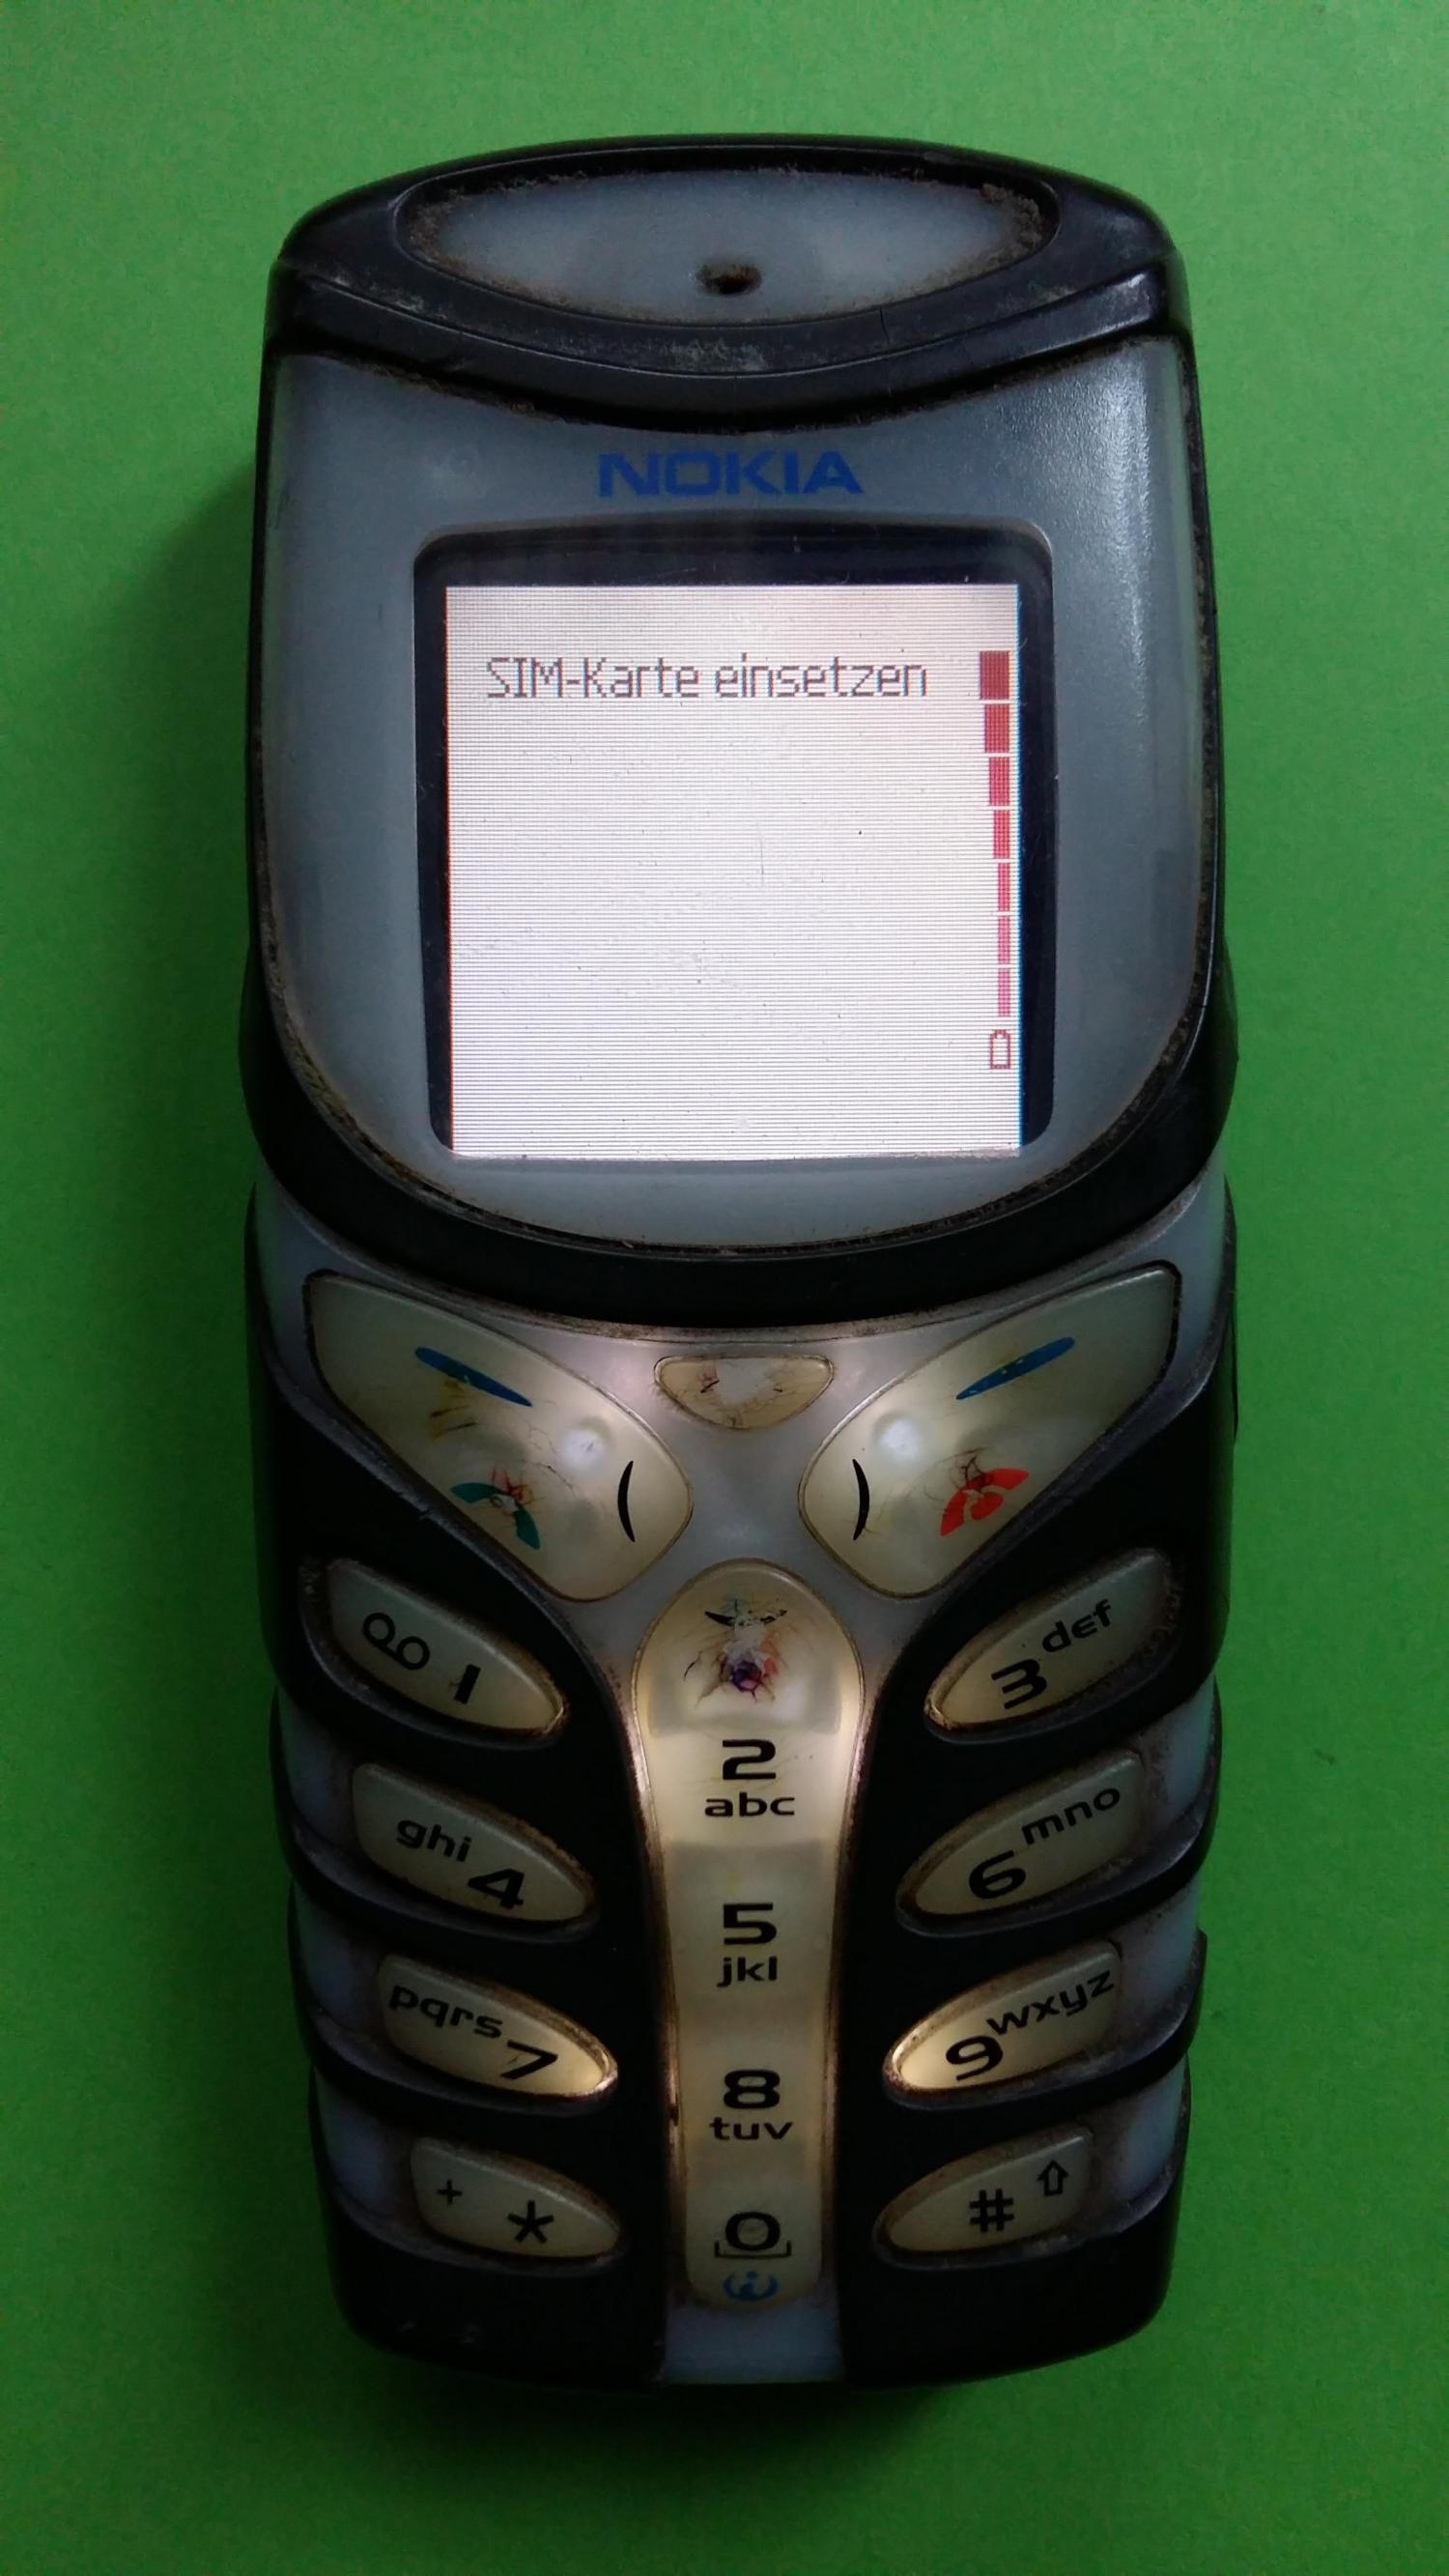 image-7311835-Nokia 5100 (3)1.jpg